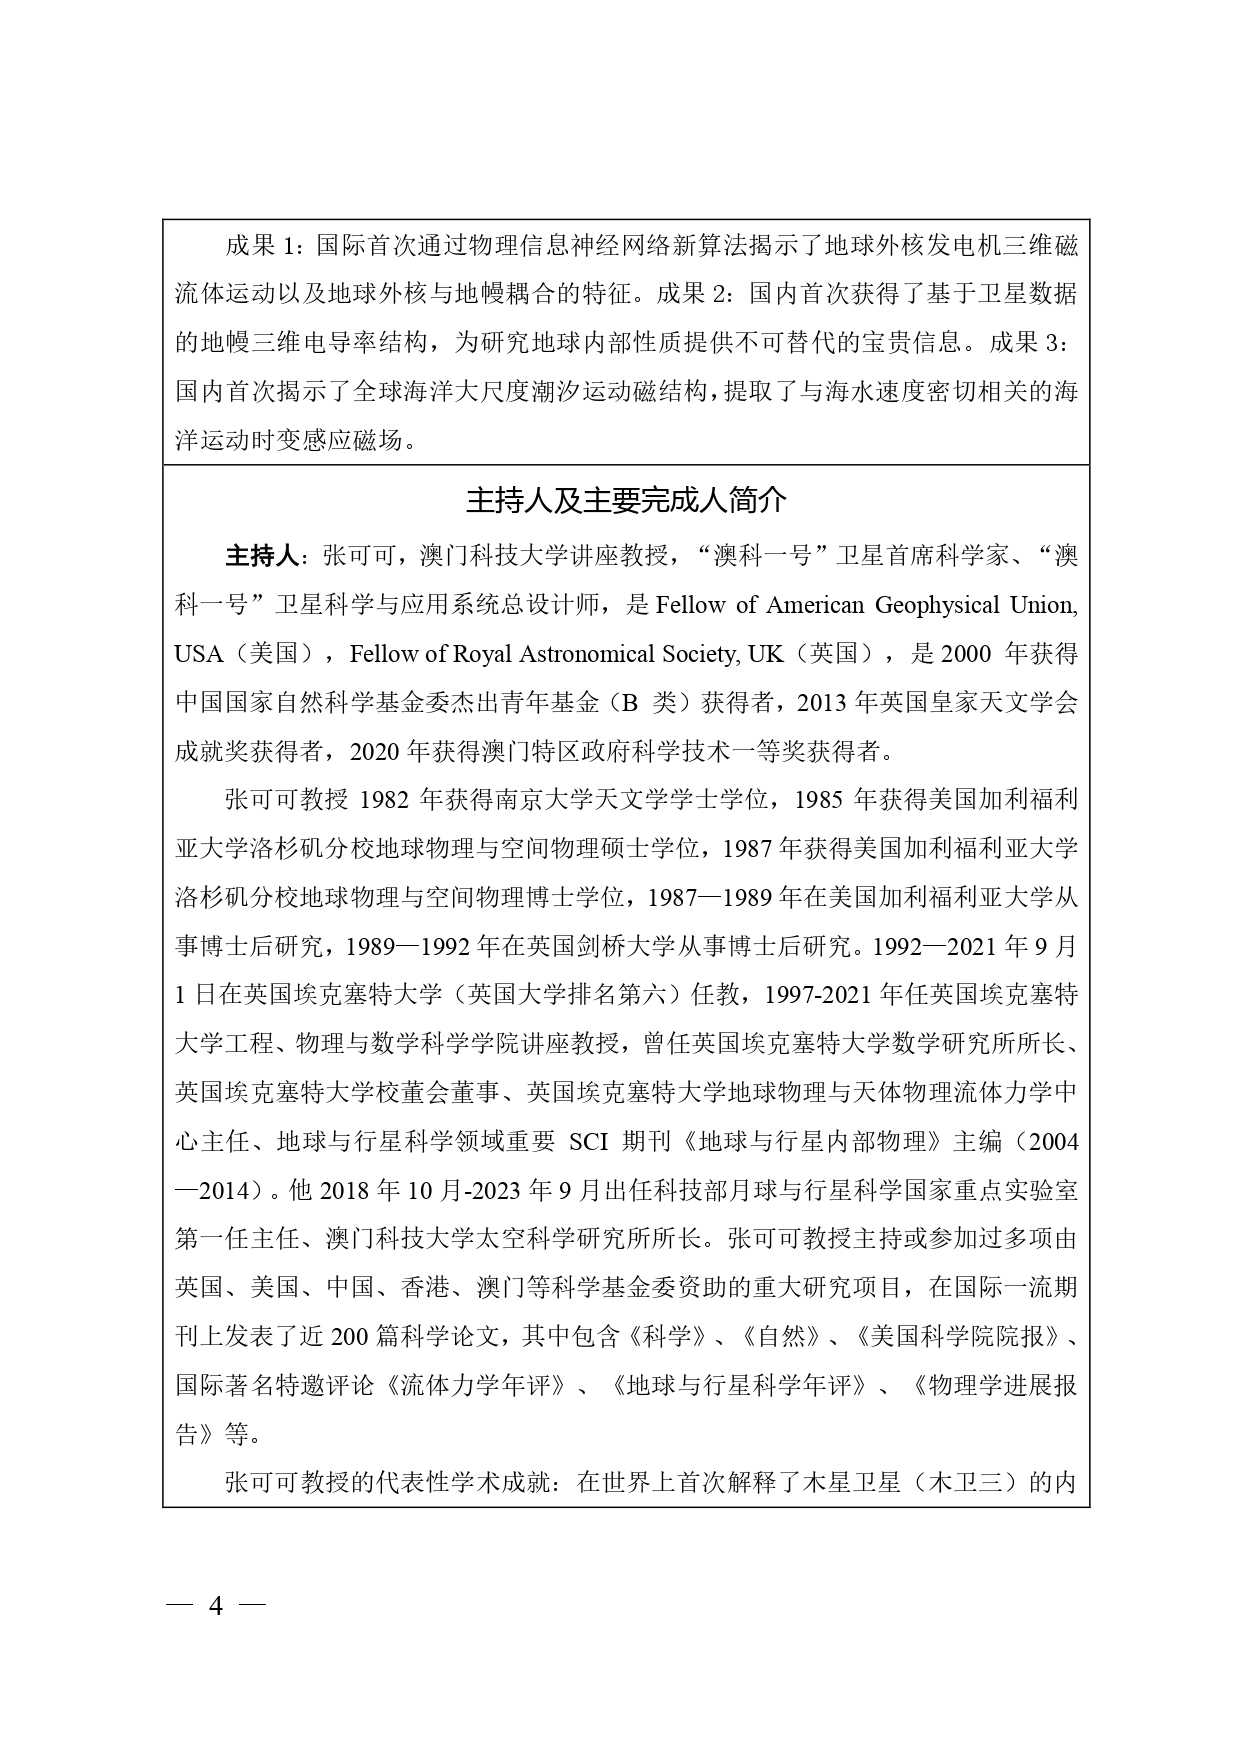 中国高等学校十大科技进展申报表 张可可终版3 page 0004